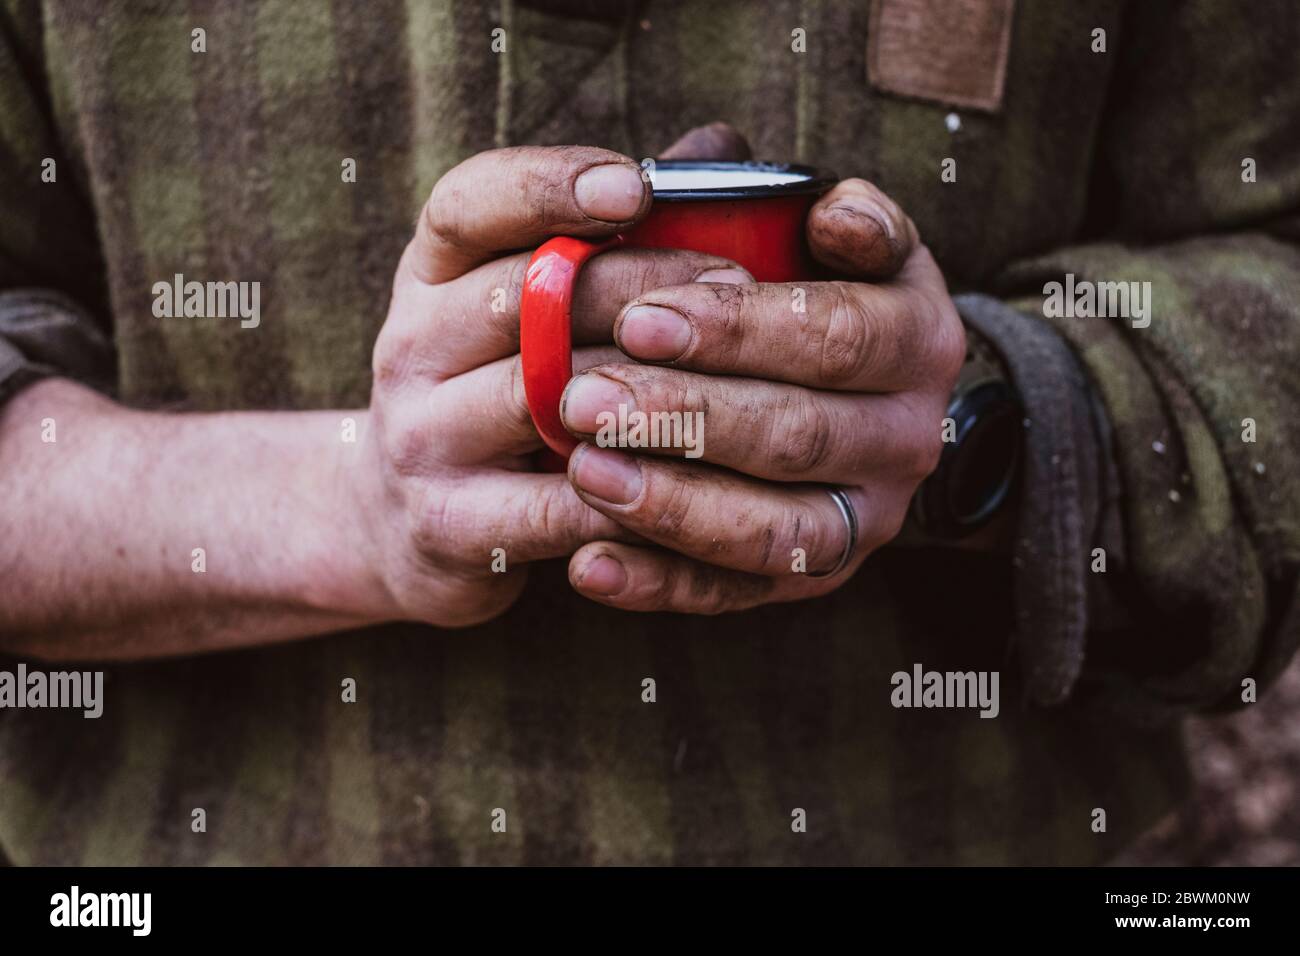 Gros plan d'un homme aux mains sales tenant une tasse en émail rouge. Banque D'Images